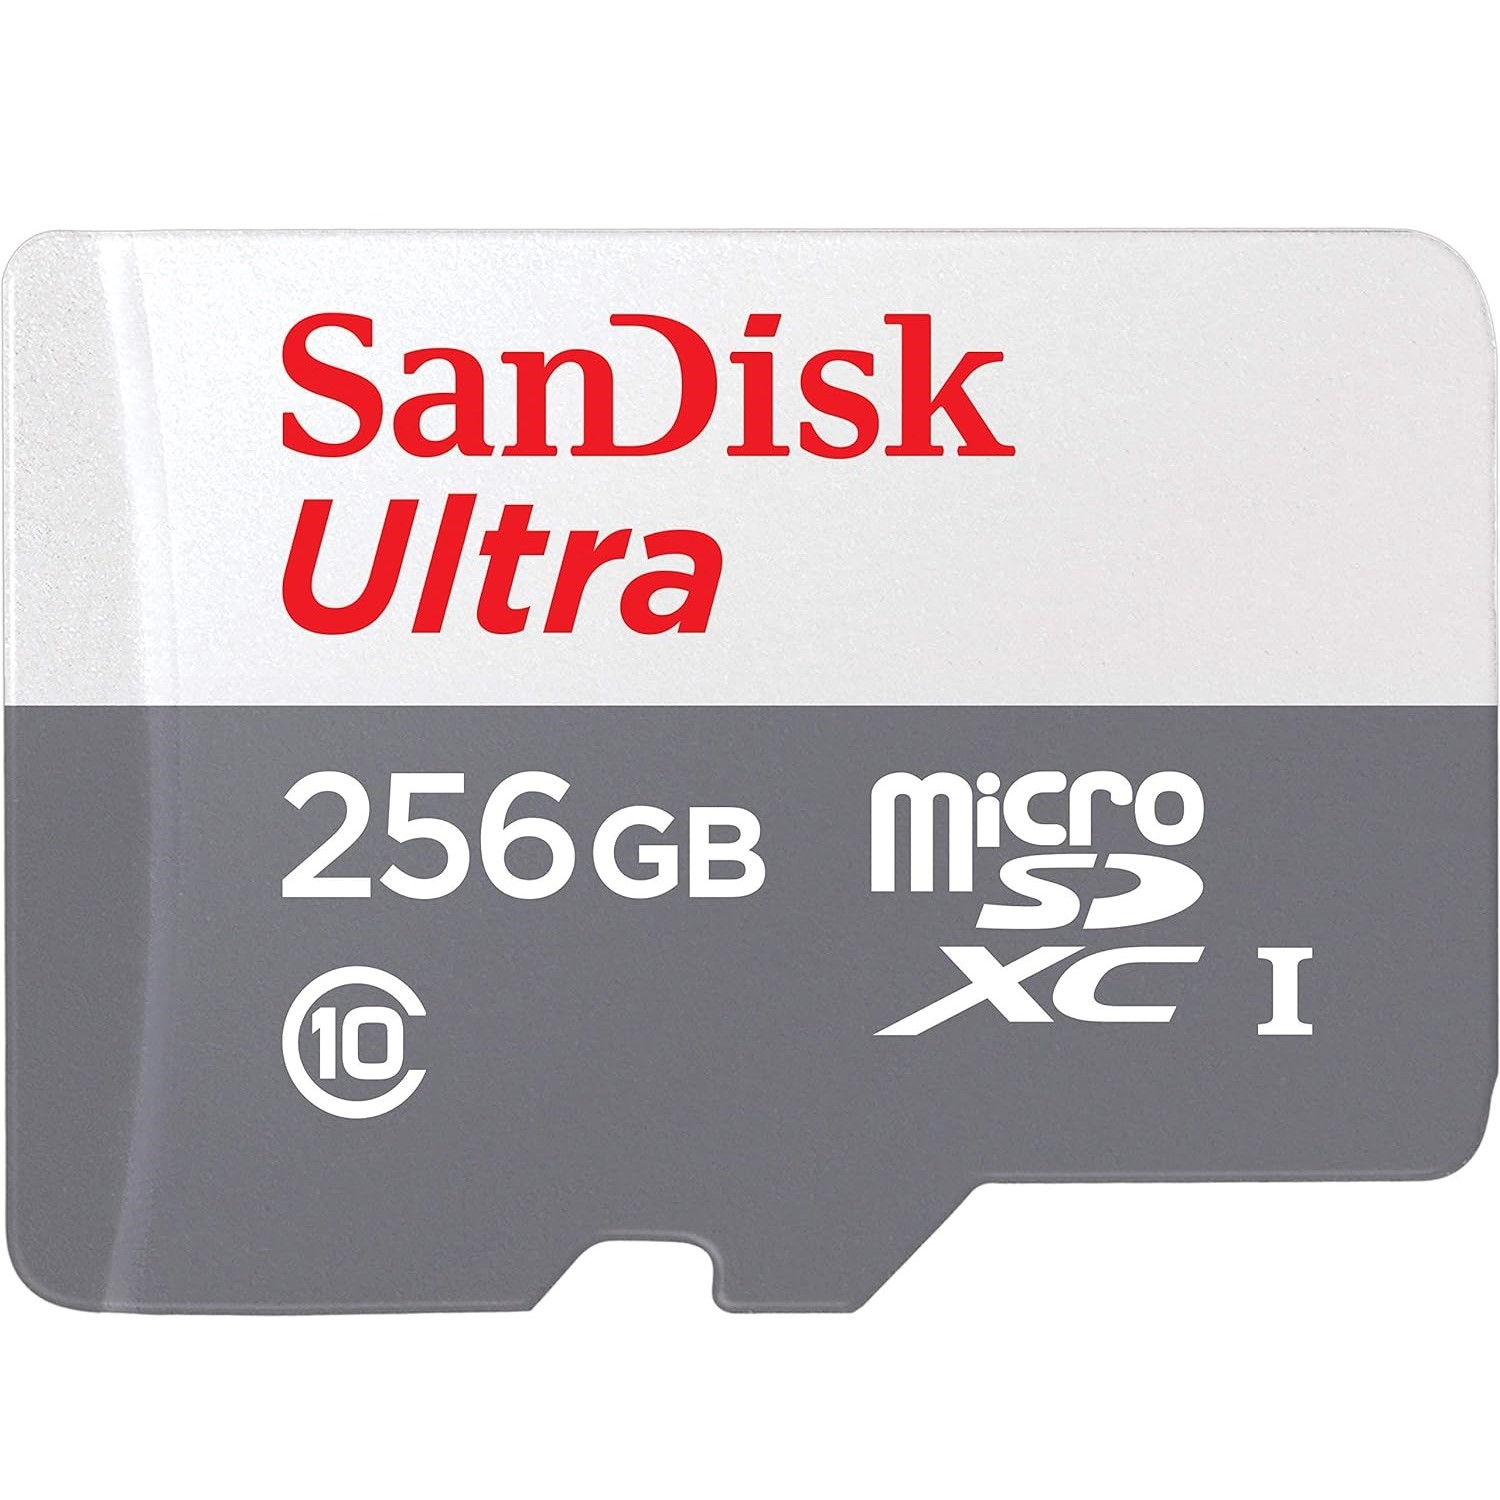 Karta pamięci microSD 256 GB firmy SanDisk Made for Amazon